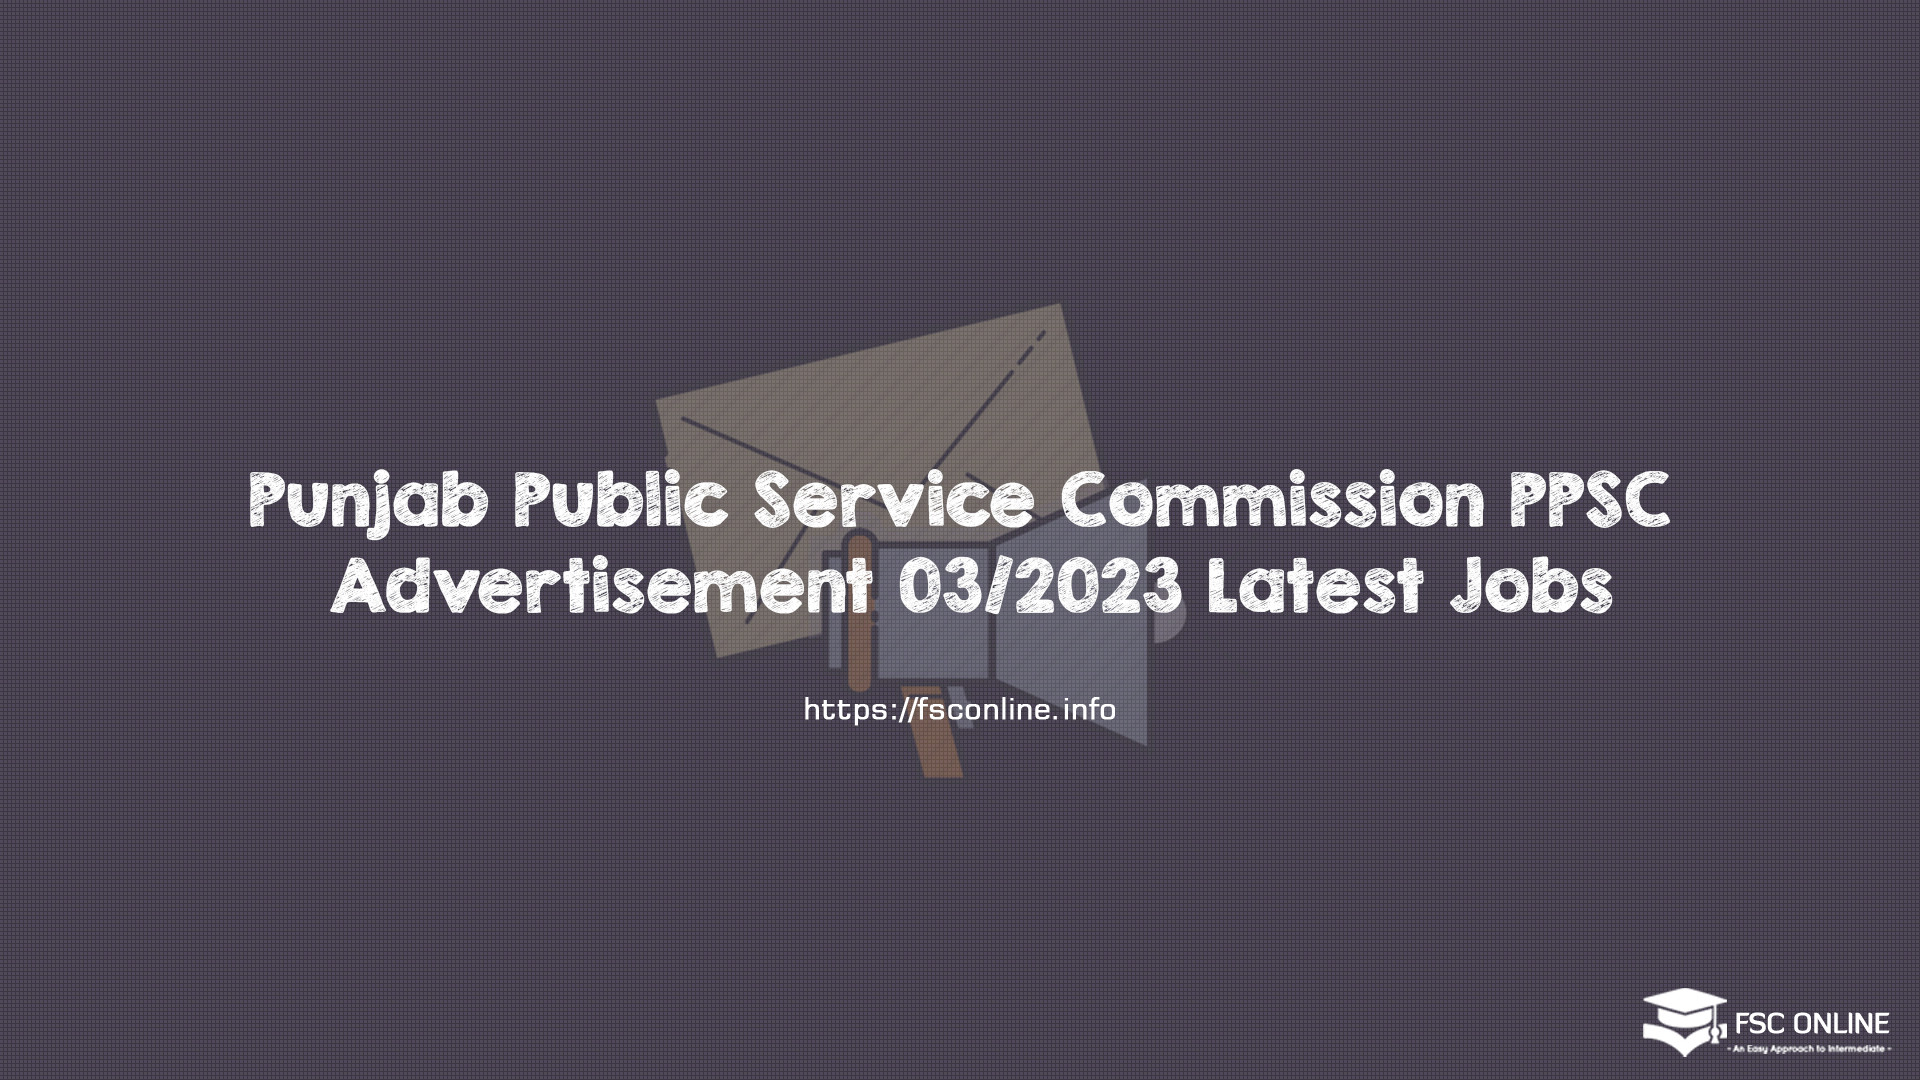 Punjab Public Service Commission PPSC Advertisement 03/2023 Latest Jobs